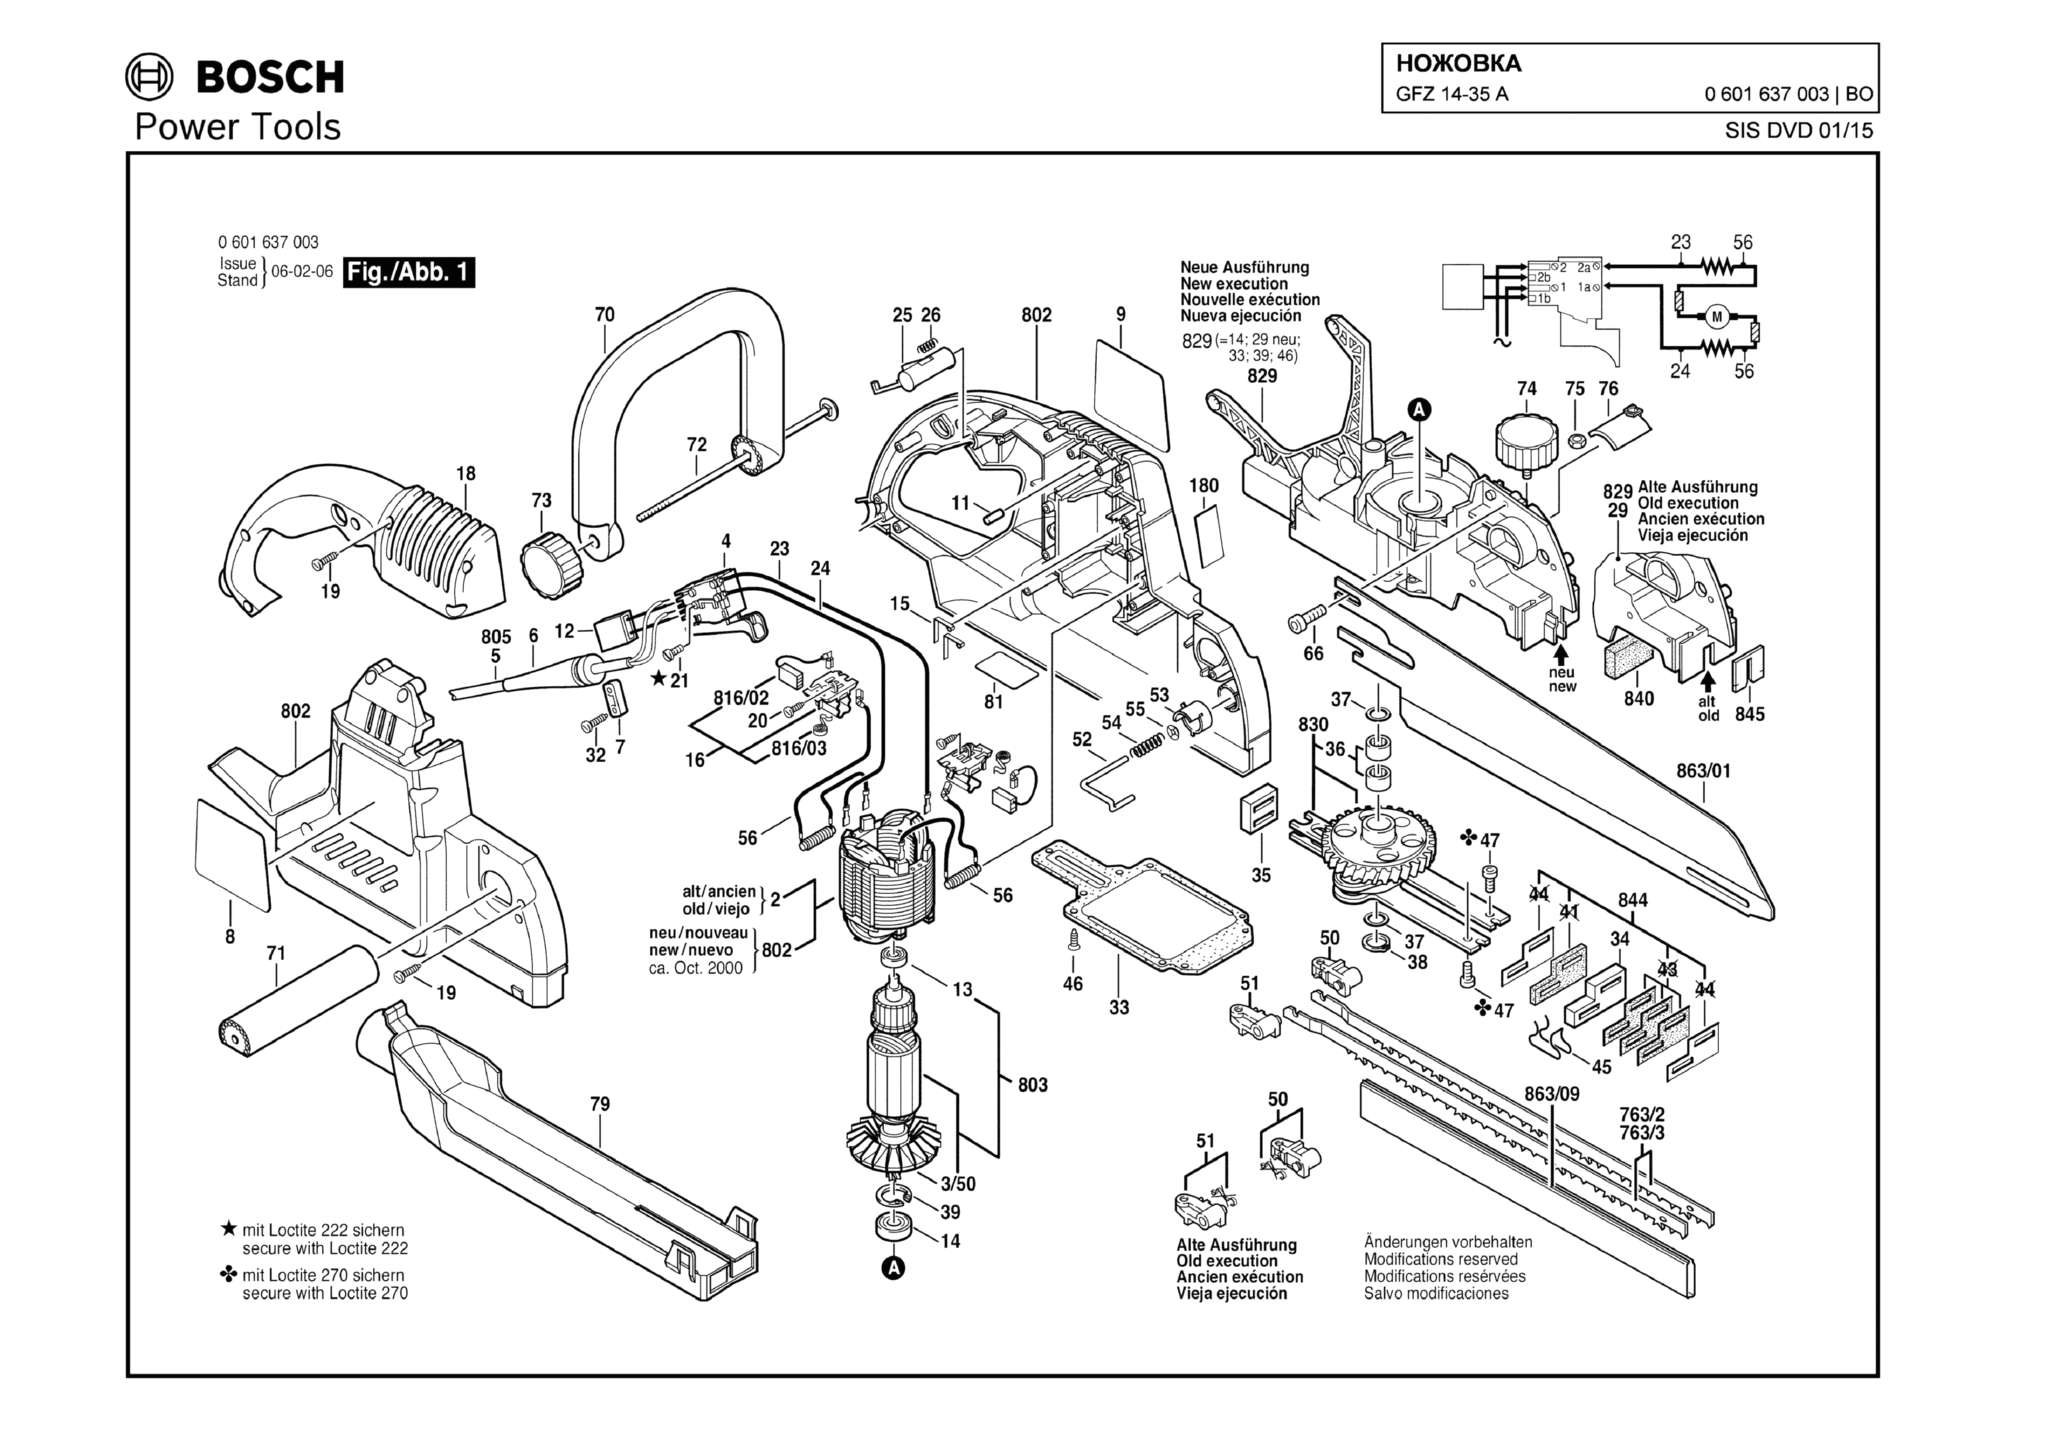 Запчасти, схема и деталировка Bosch GFZ 14-35 A (ТИП 0601637003)